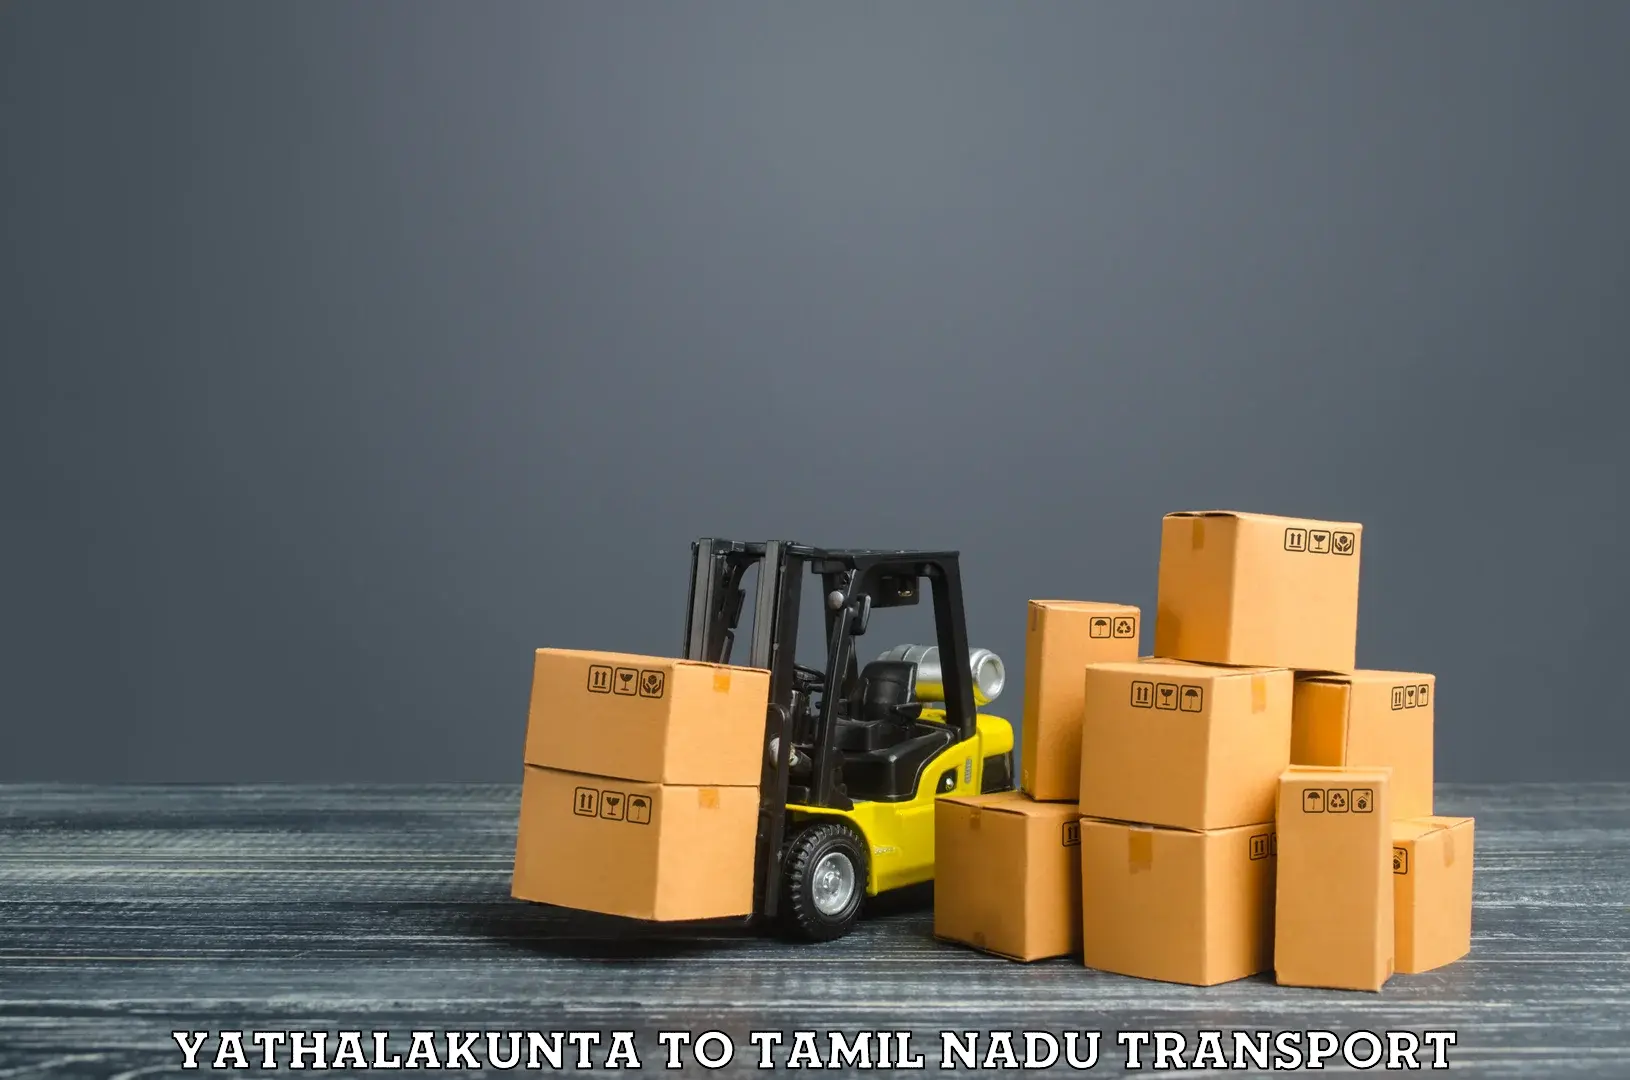 Cargo transport services Yathalakunta to Palayankottai